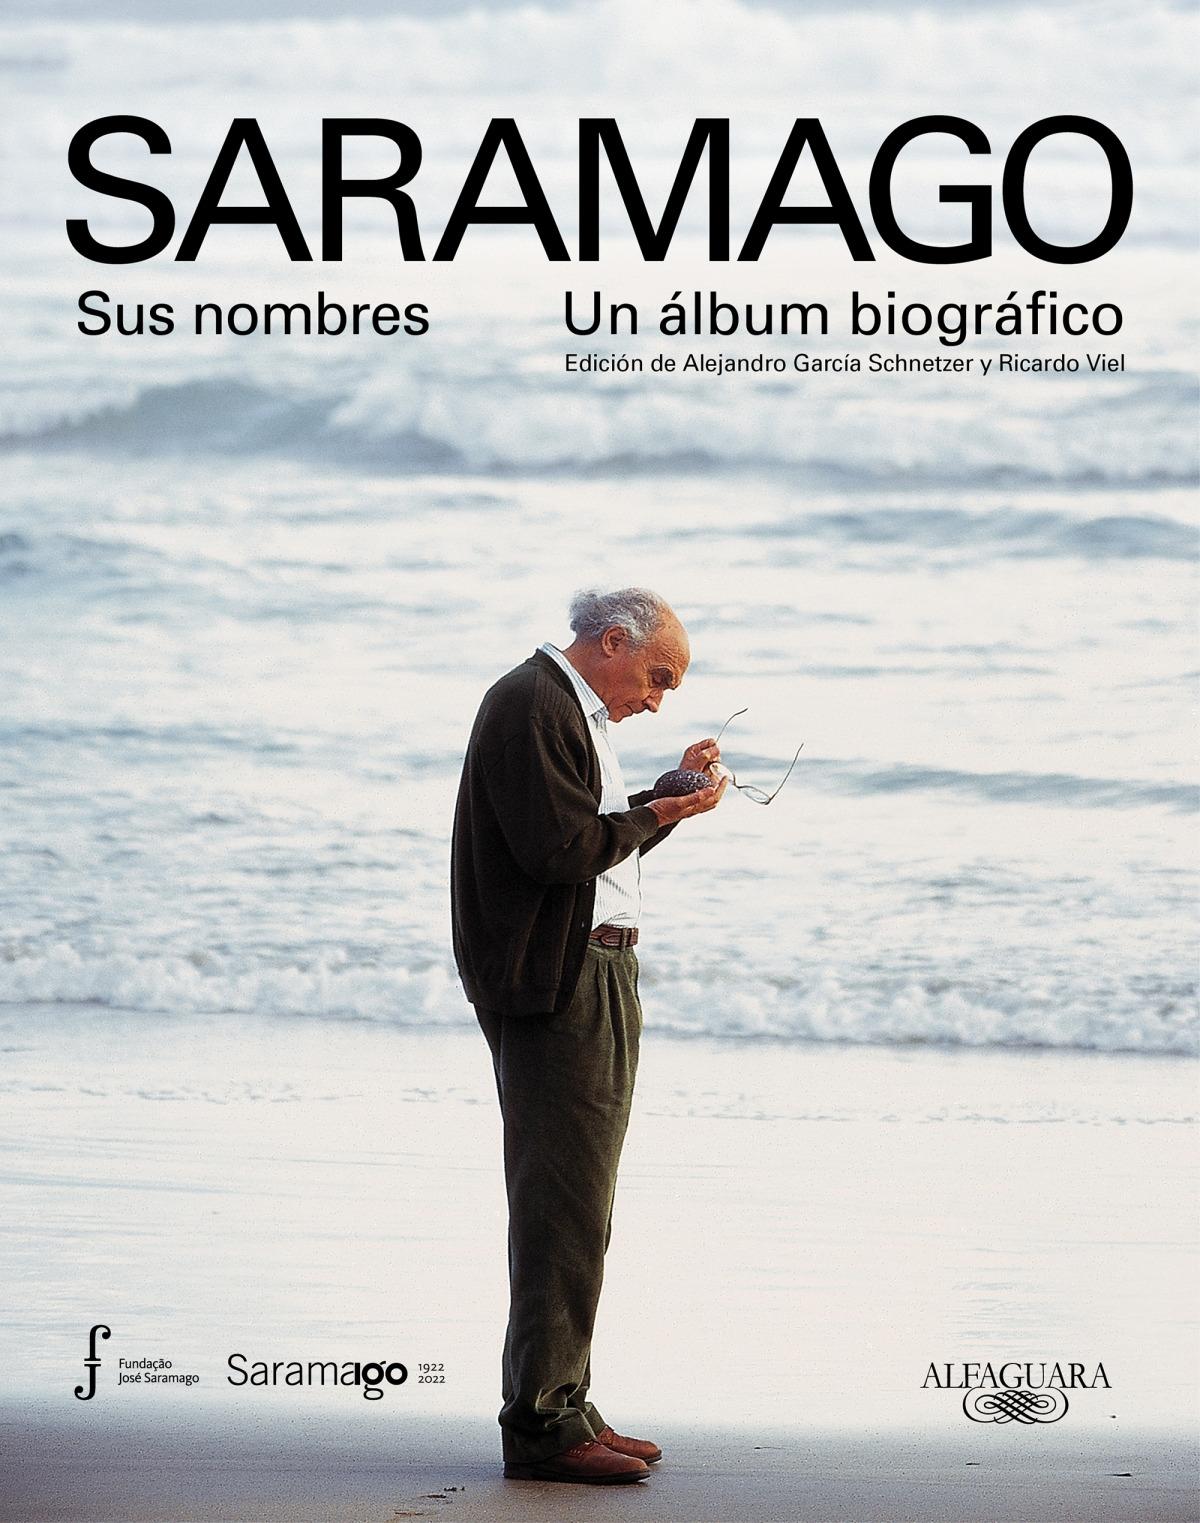 Saramago. Sus nombres. Un álbum biográfico "Edición de Alejandro García Schnetzer y Ricardo Viel"